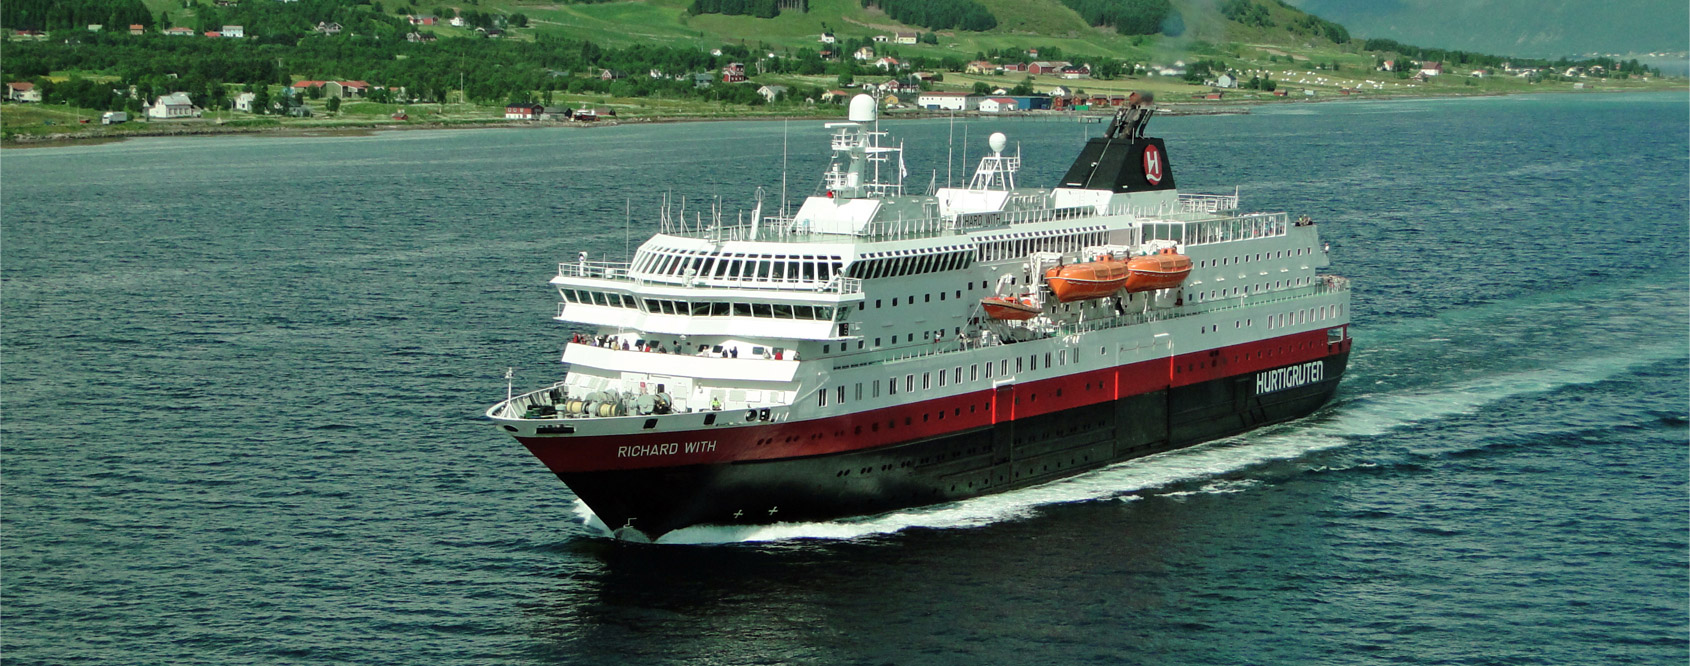 Hurtigruten Norwegian Coastal Express Main Image